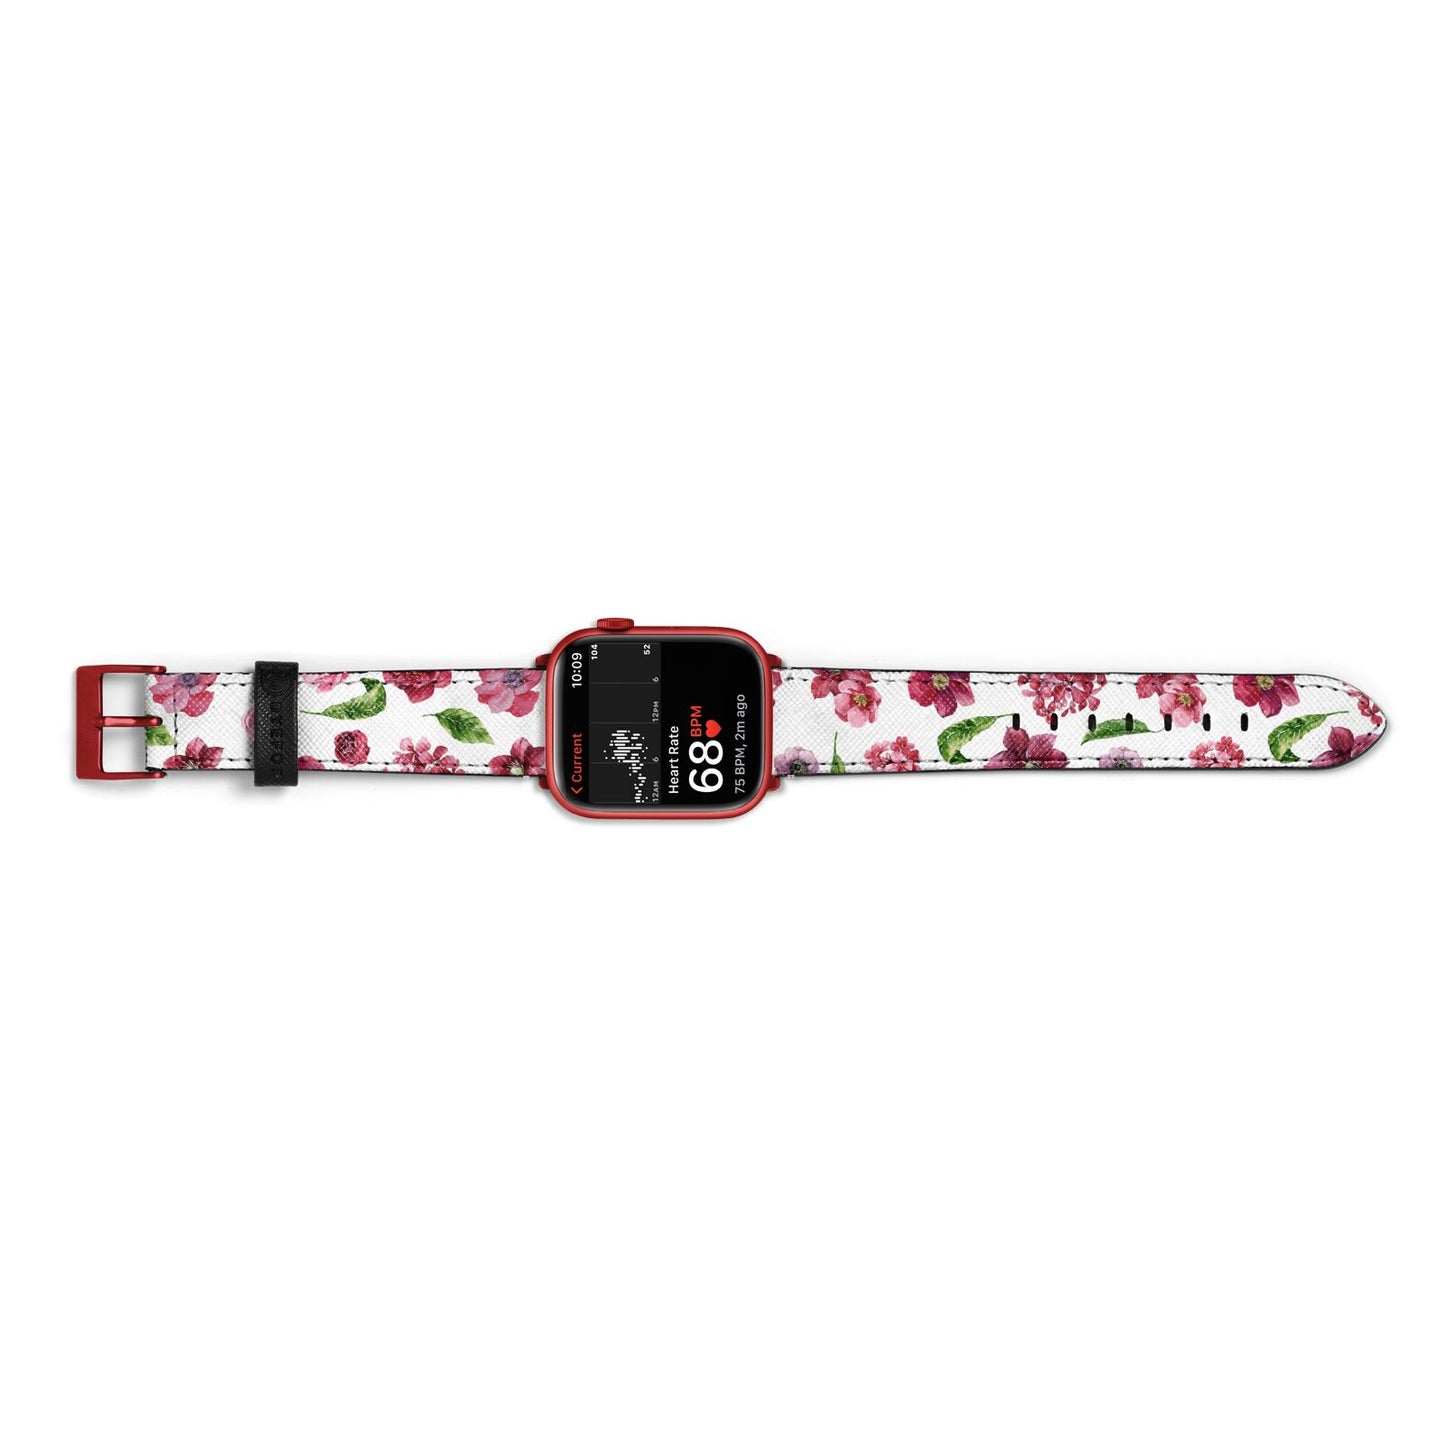 Pink Floral Apple Watch Strap Size 38mm Landscape Image Red Hardware